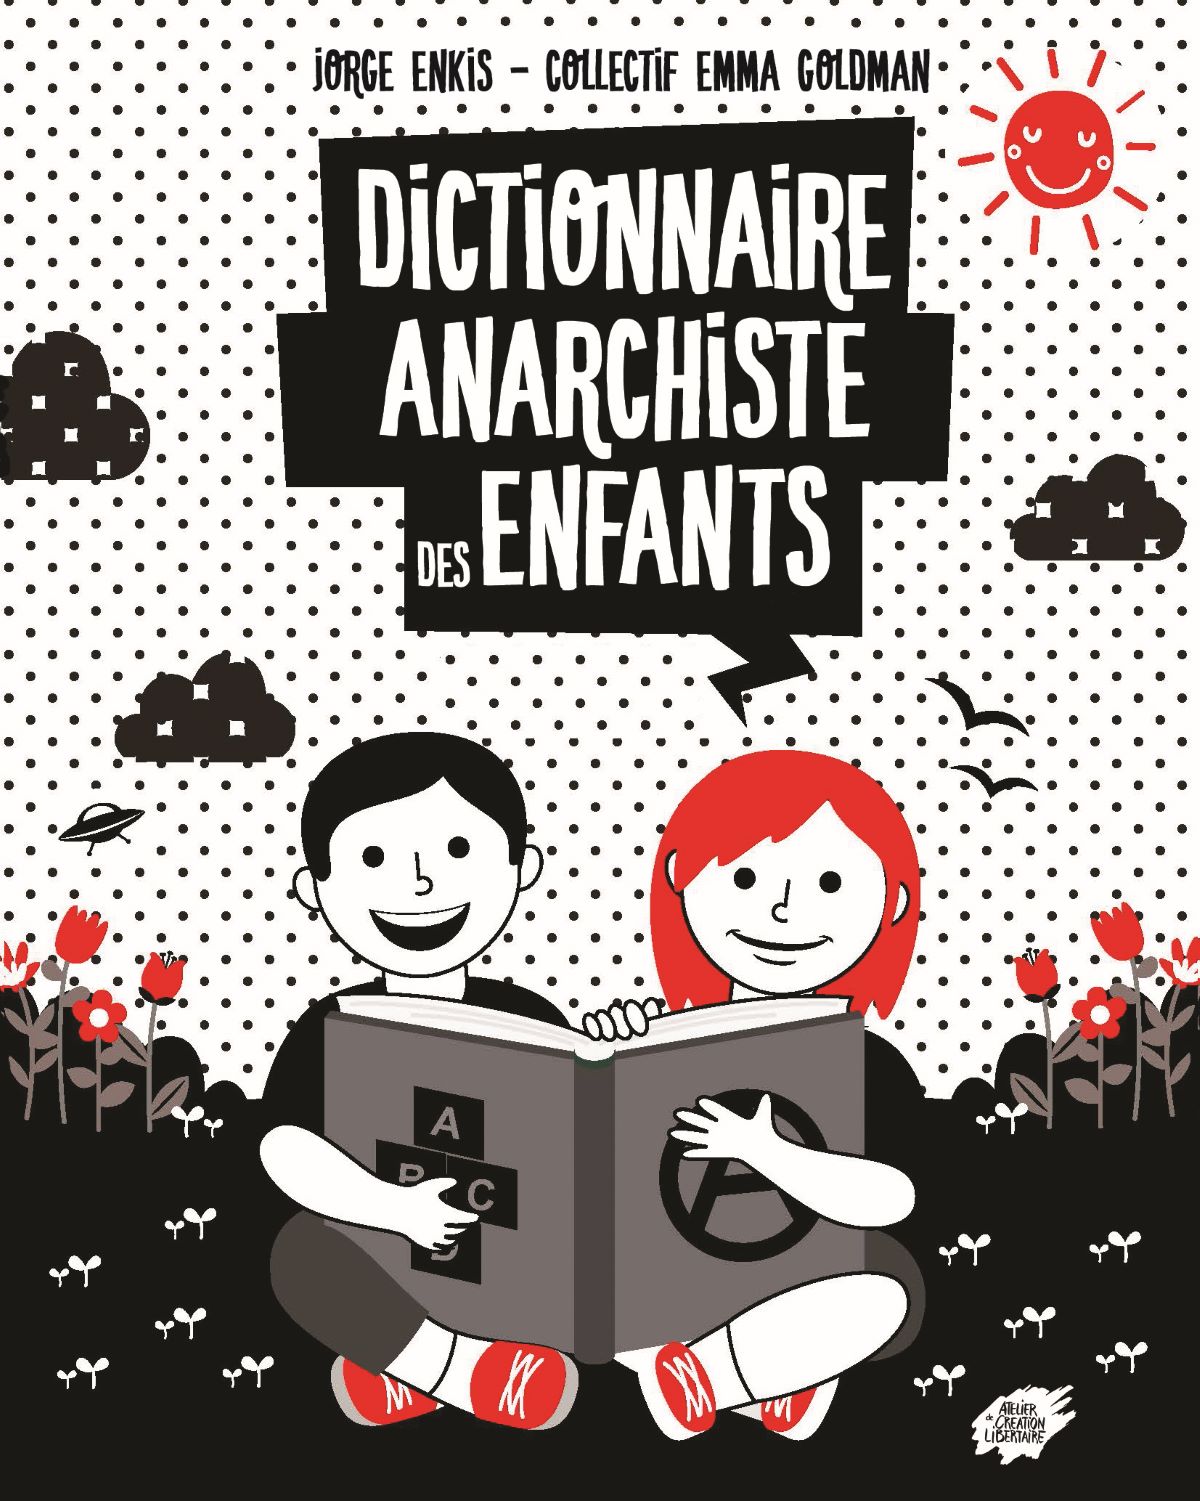 Le Dictionnaire anarchiste des enfants, éditions L'atelier de création libertaire